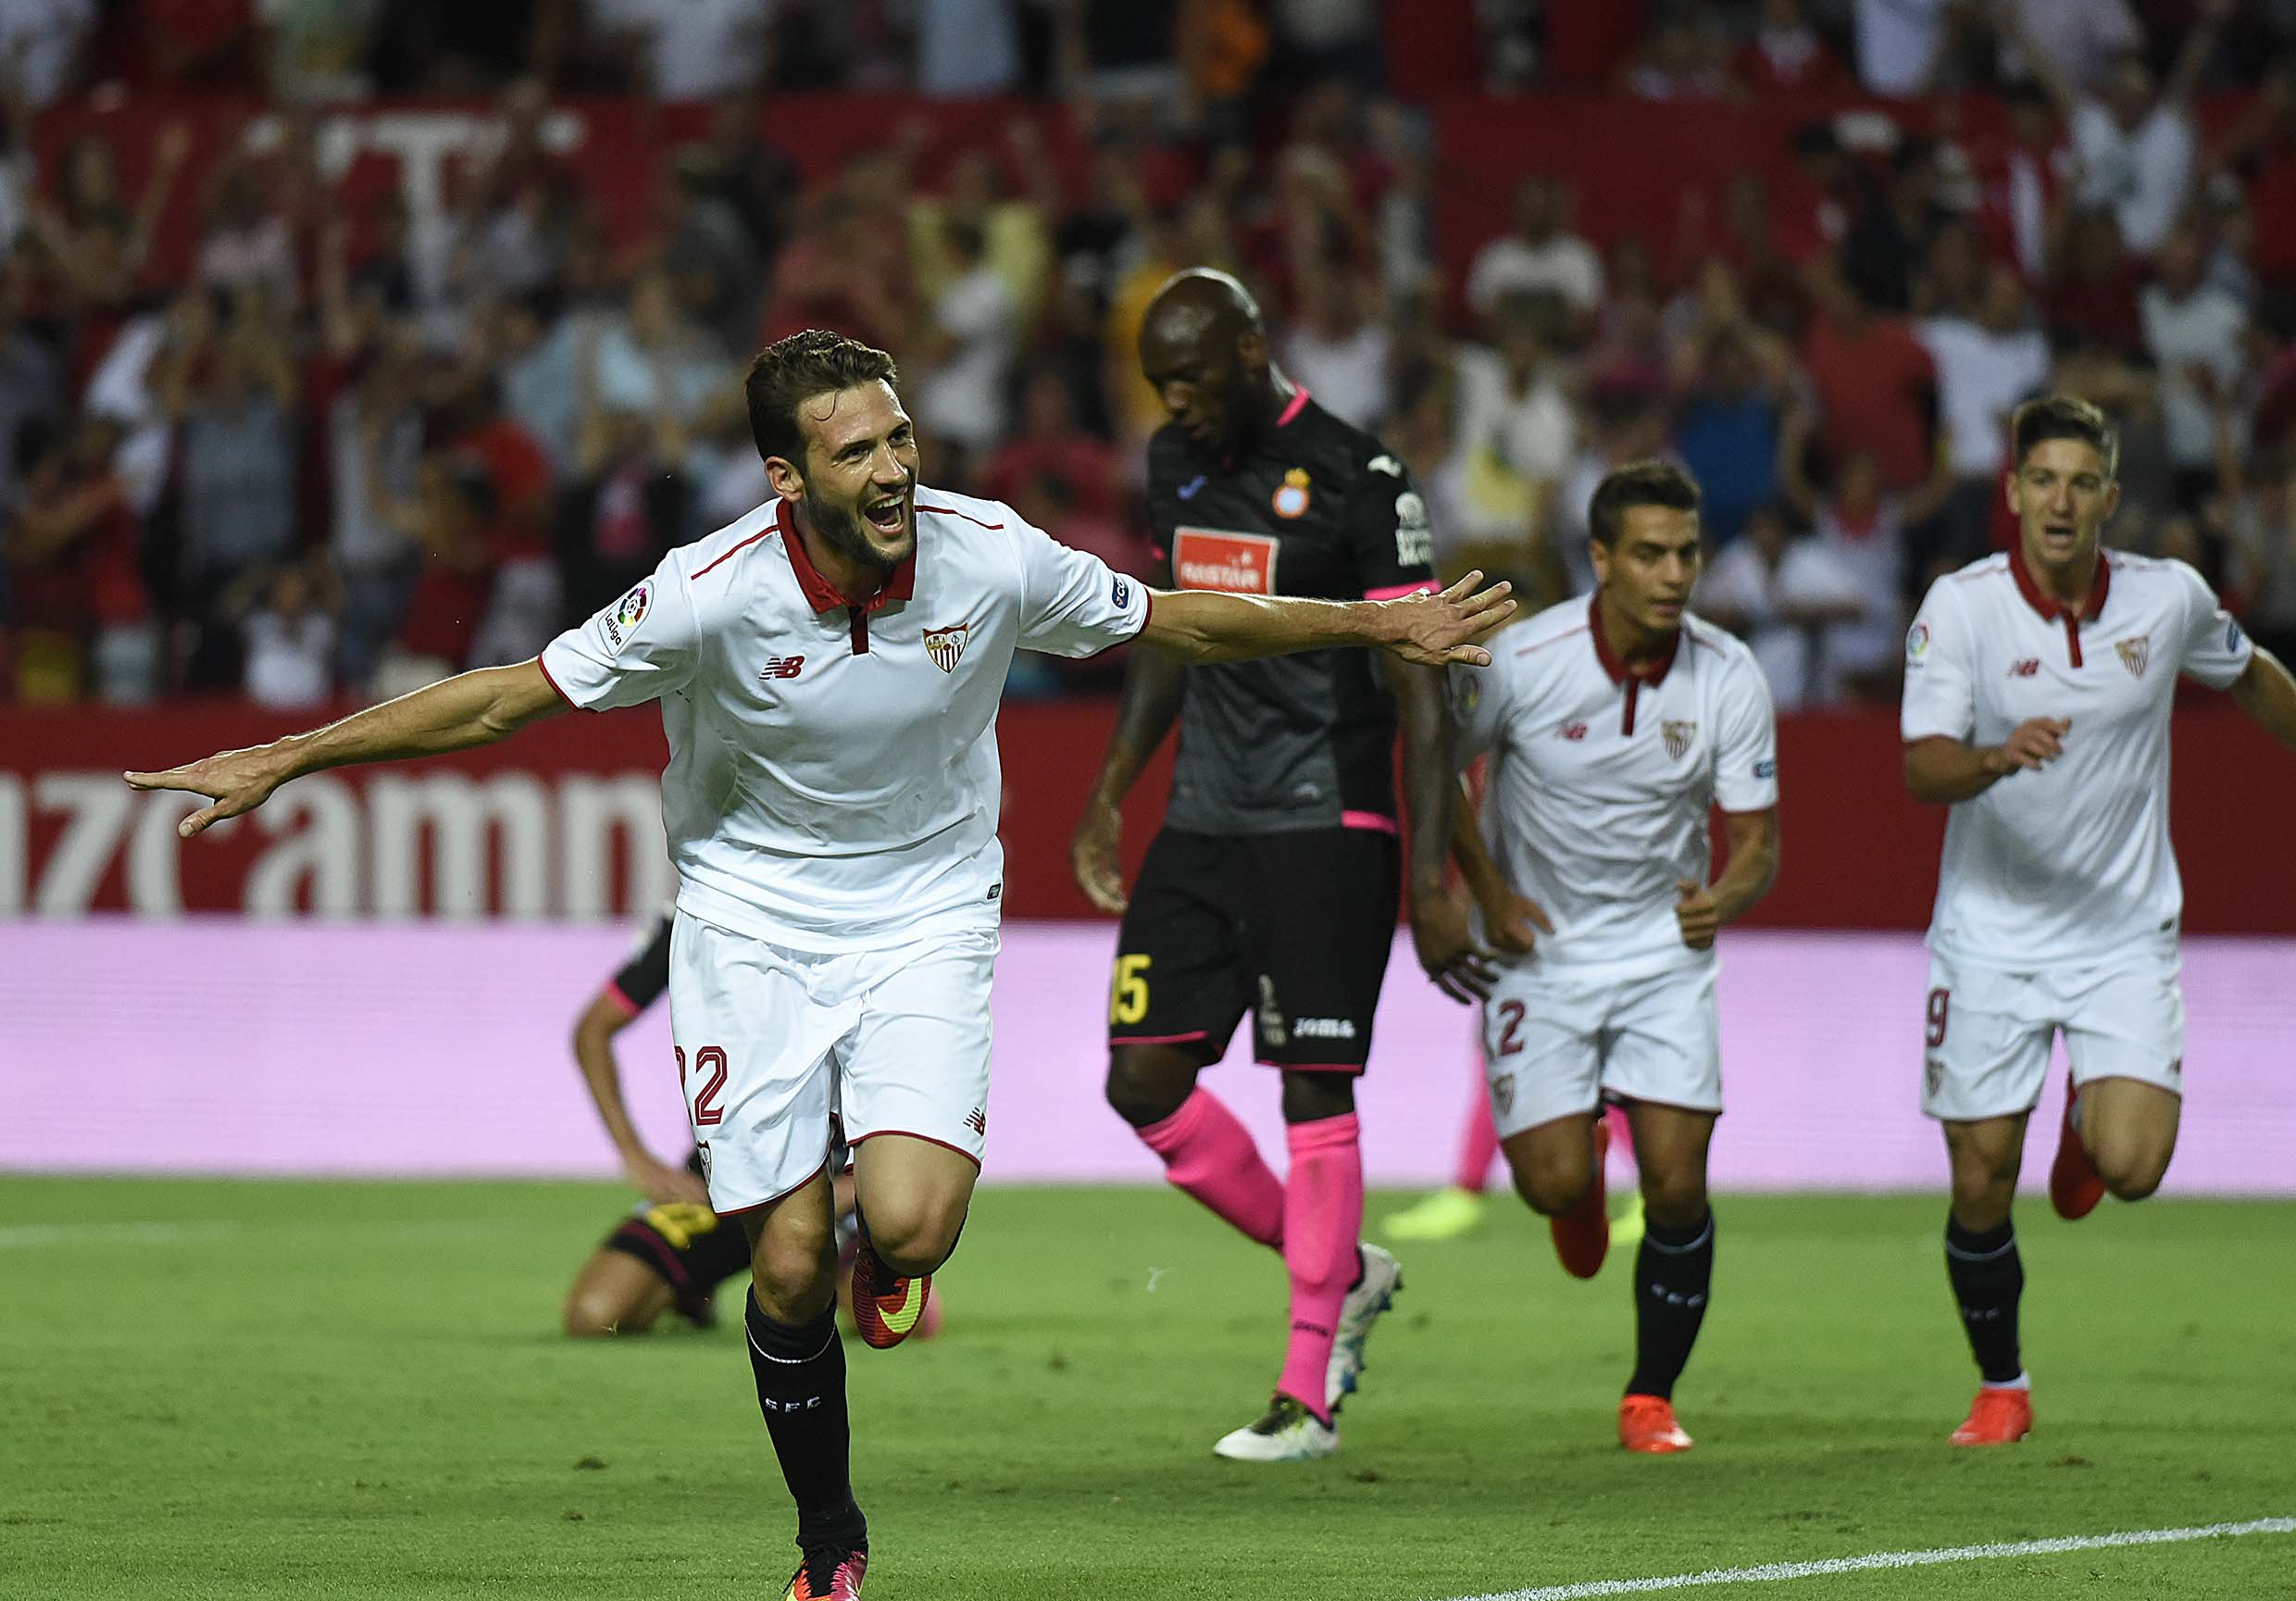 Mudo Vázquez celebra gol en el Sevilla-Espanyol de la 16/17